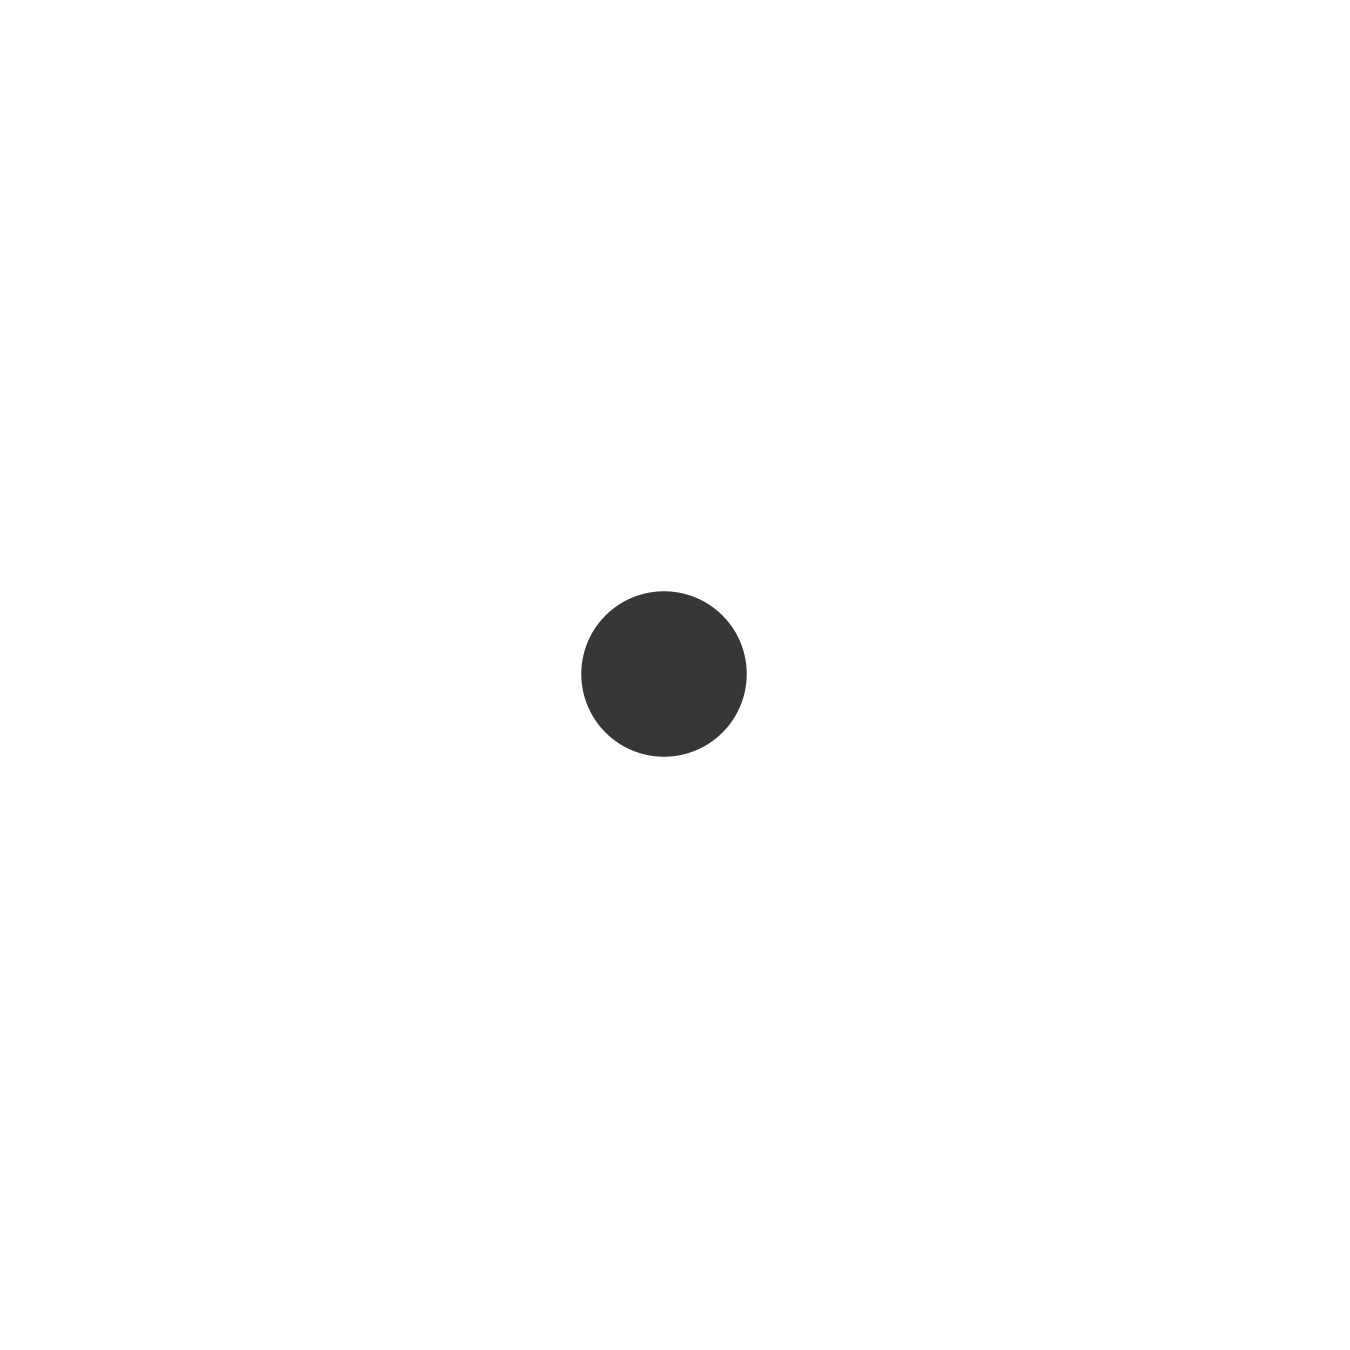 A single grey dot